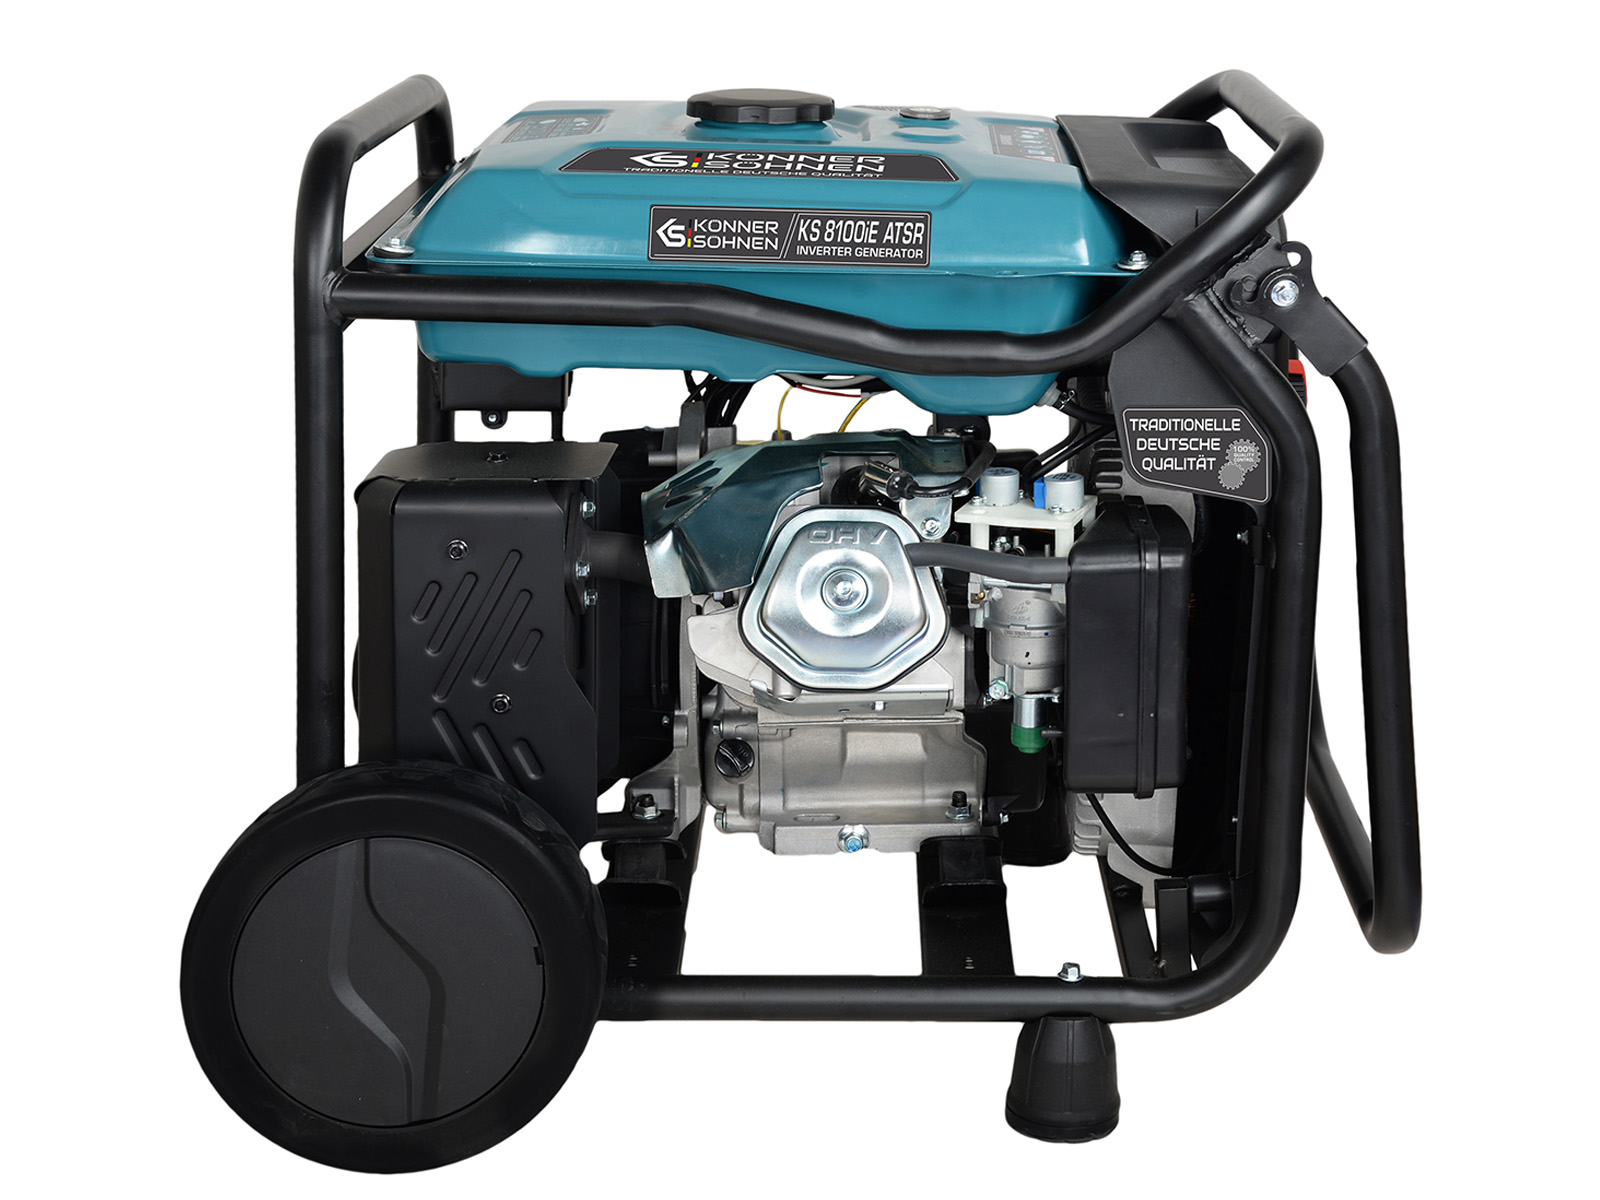 Generator invertor KS 8100iE ATSR